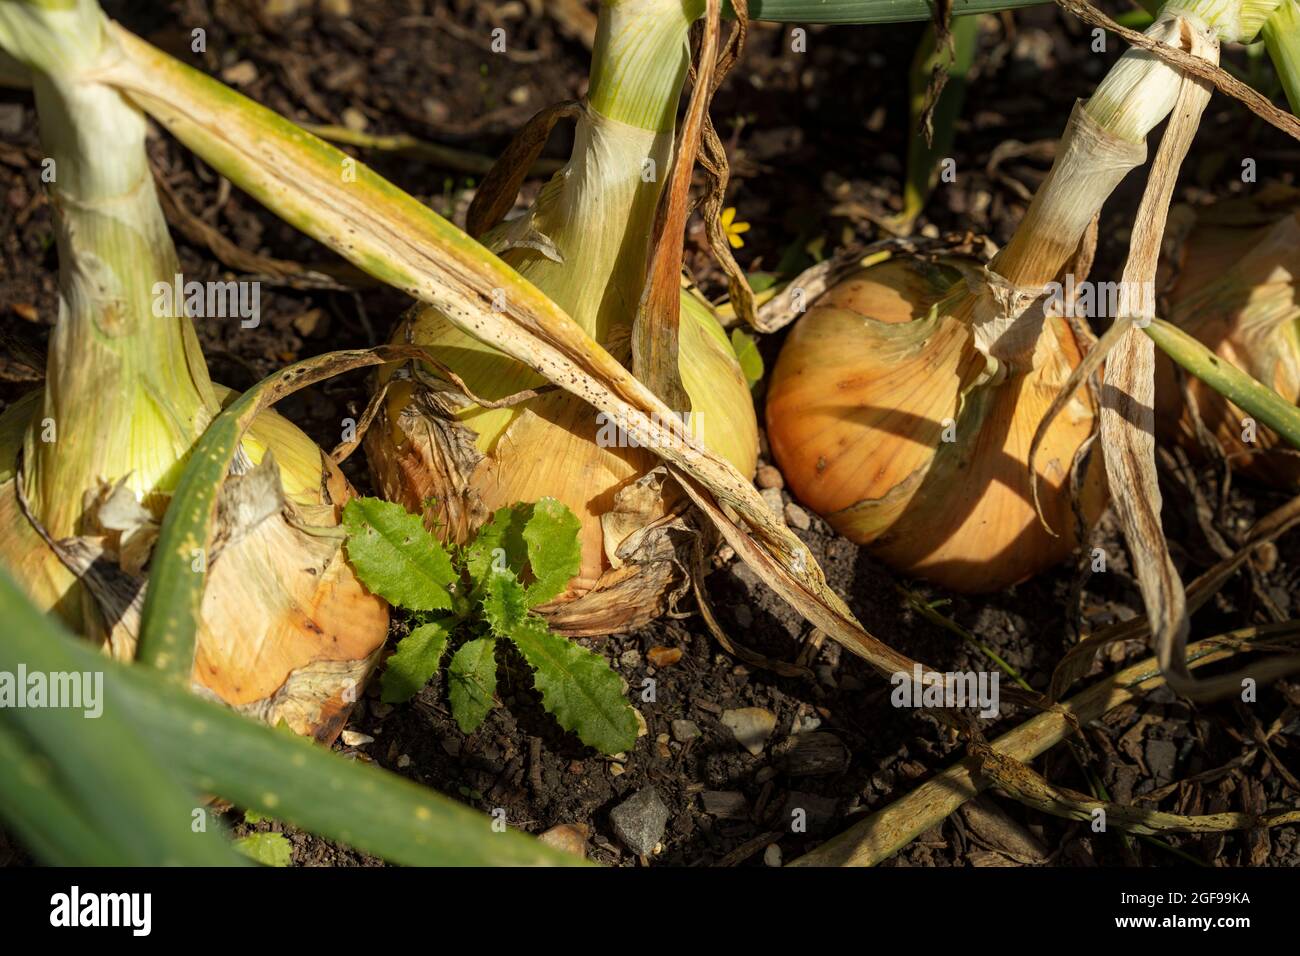 Nahaufnahme von Lebensmittelpflanzen-Porträt von faszinierenden britisch gezüchteten Zwiebeln - Shakespeare in einem Garten-Setting Stockfoto